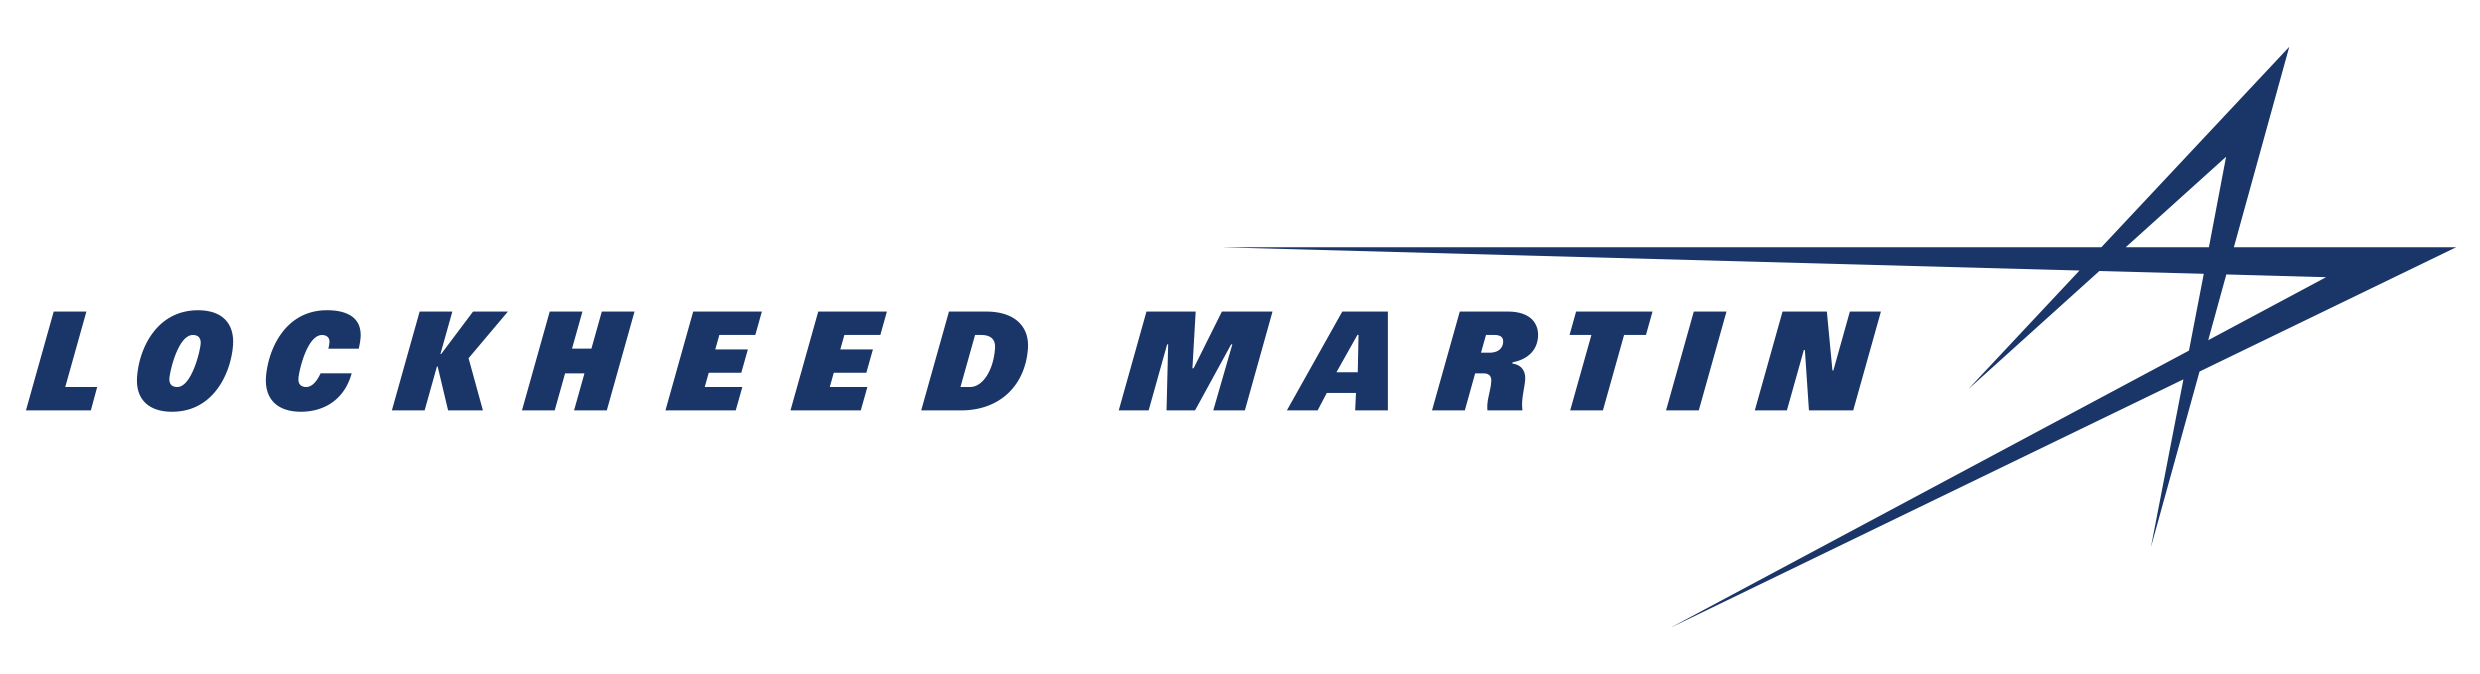 Lockheed Martin Space Systems Logo - Lockheed Martin Corporation | Lockheed Martin